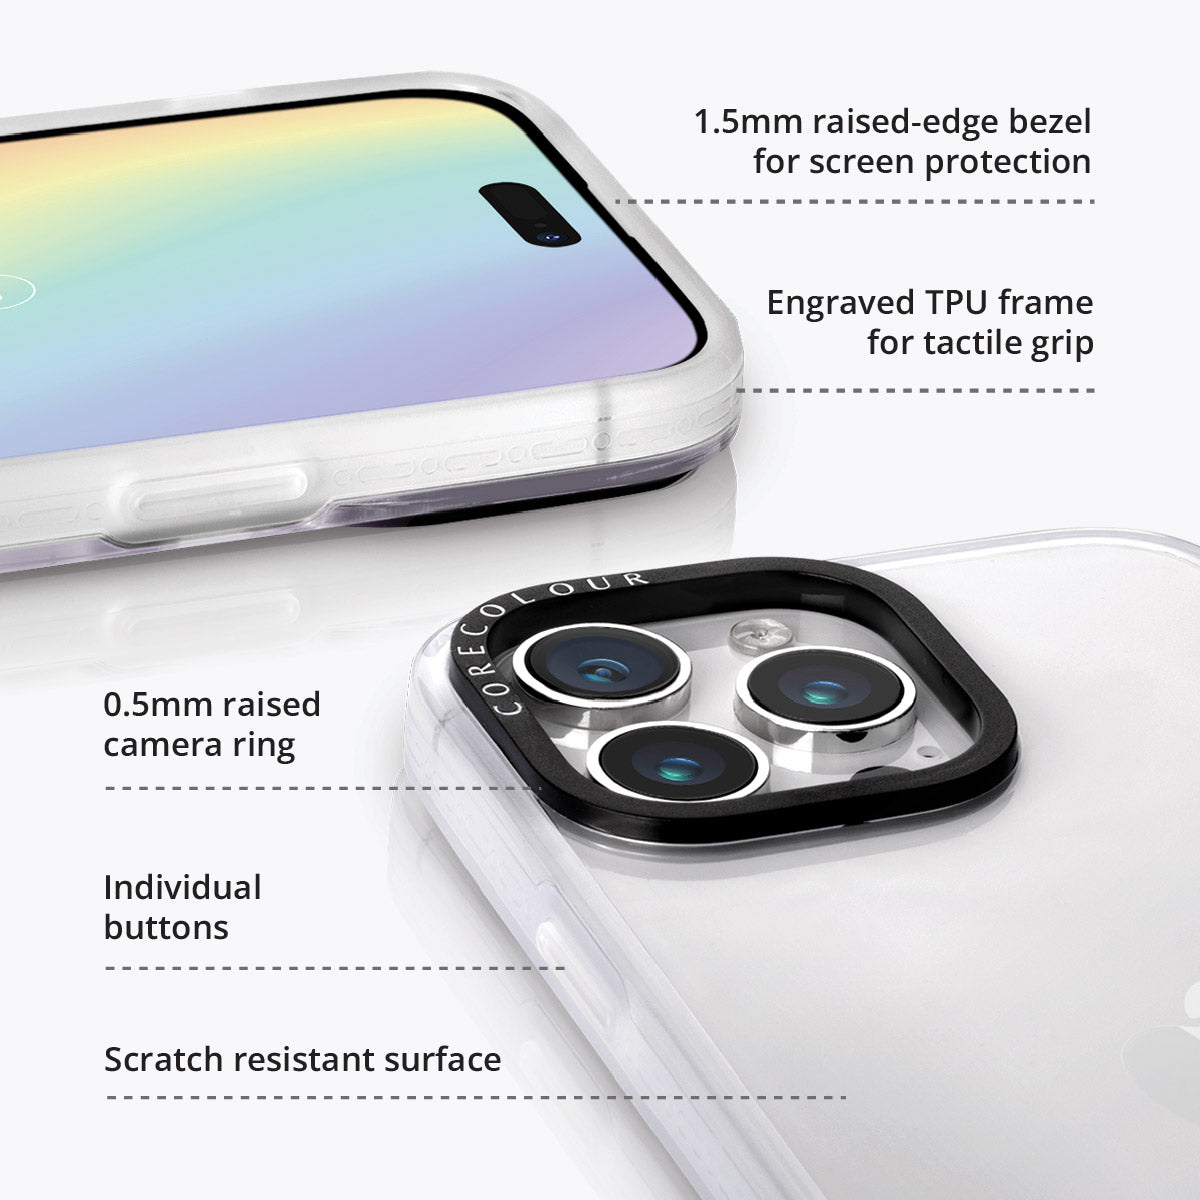 iPhone 14 Mauve Leaf Phone Case MagSafe Compatible - CORECOLOUR